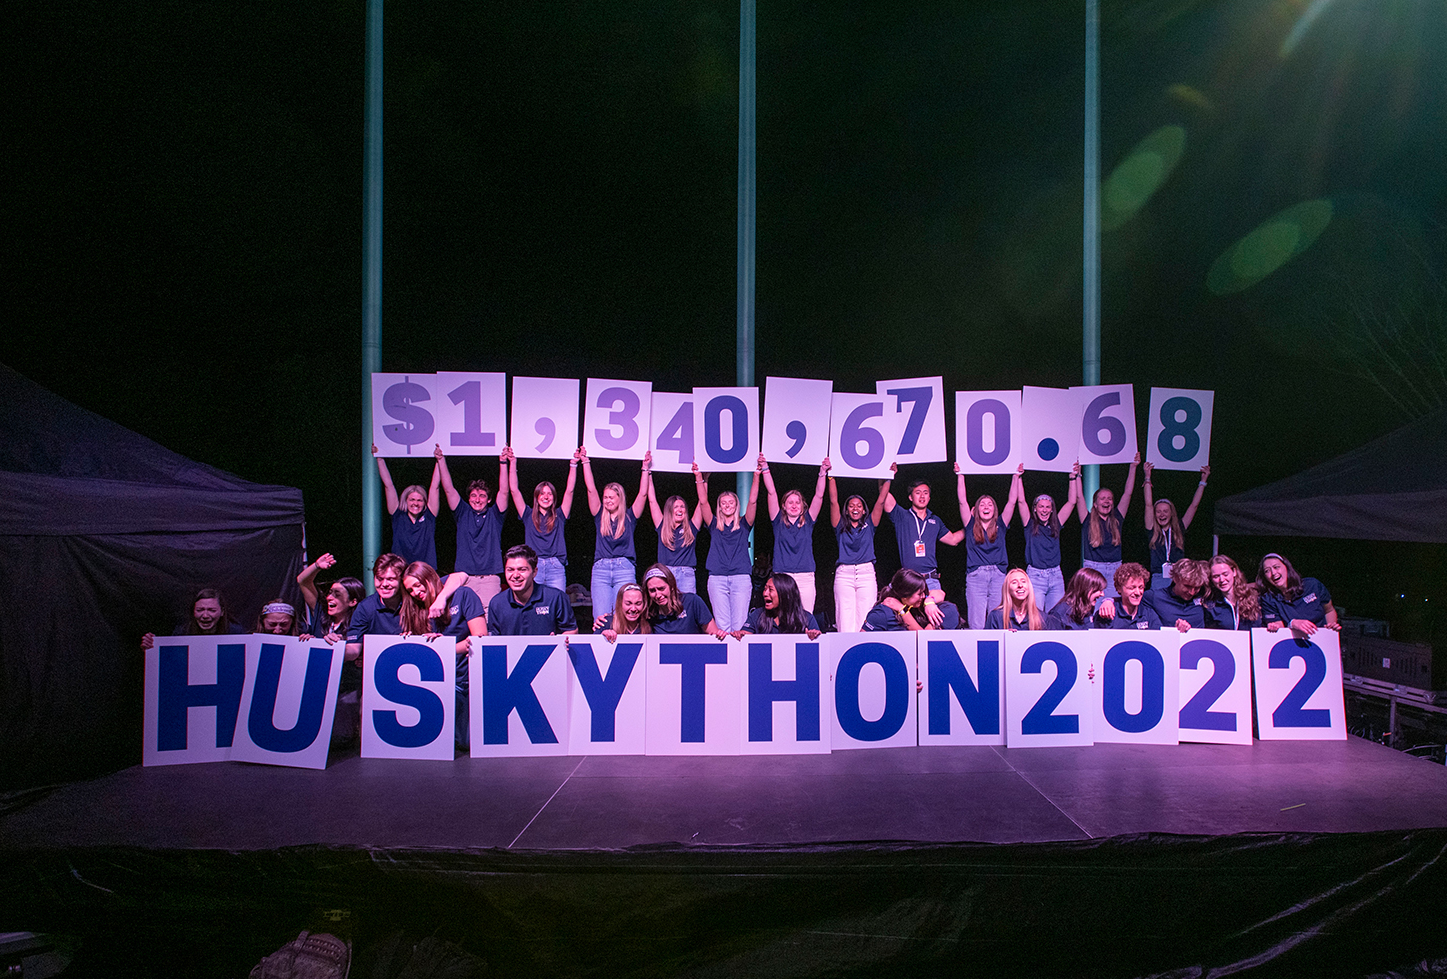 HuskyTHON 2022 raises an incredible $1,340,670.68